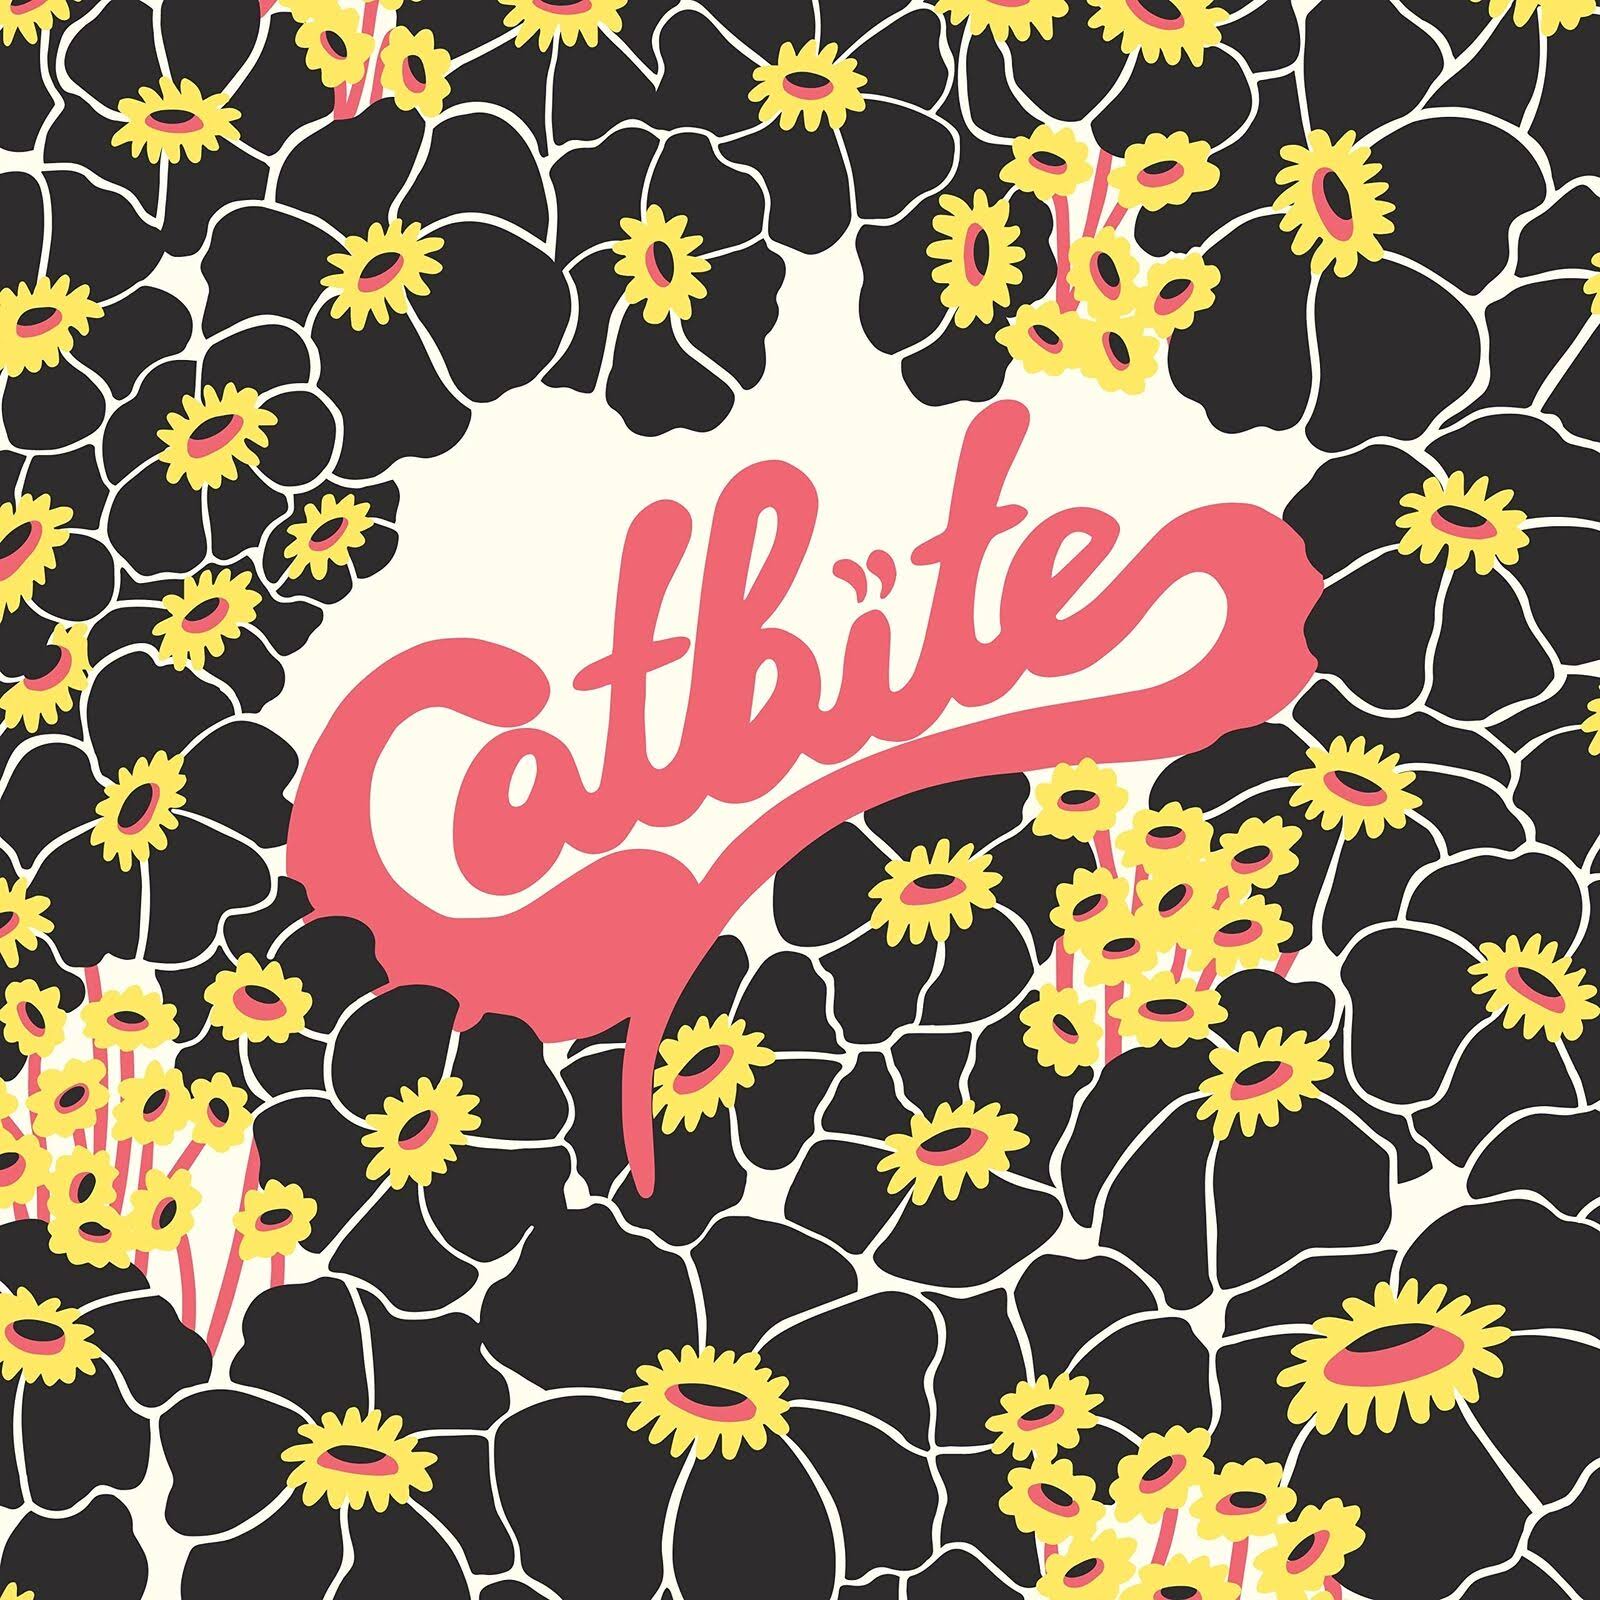 Catbite Vinyl Record LP Album